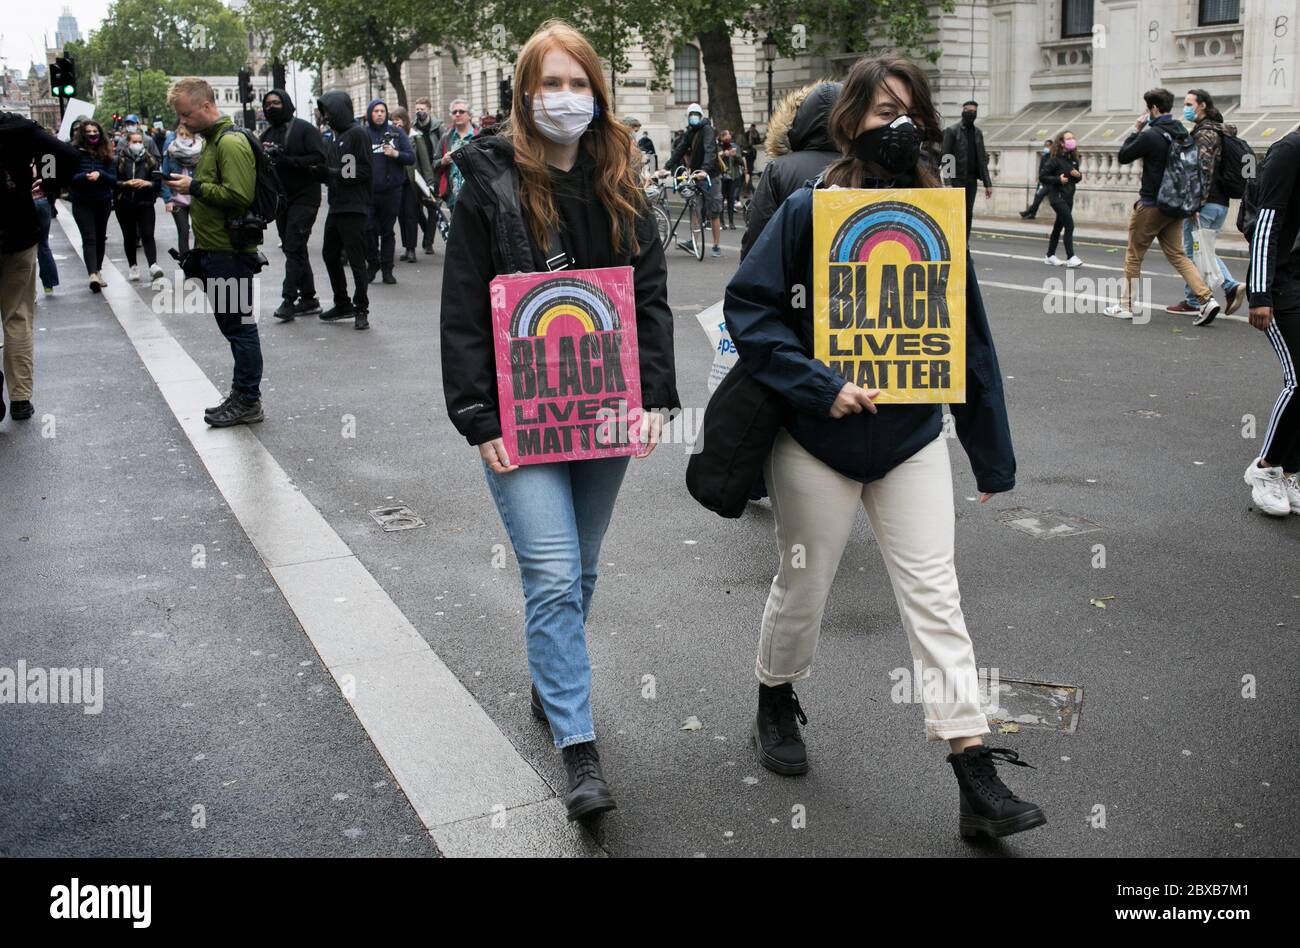 Due manifestanti bianchi tengono cartelli in solidarietà con il movimento Black Lives Matter durante il raduno contro il razzismo tenutosi nel centro di Londra, Regno Unito. Foto Stock